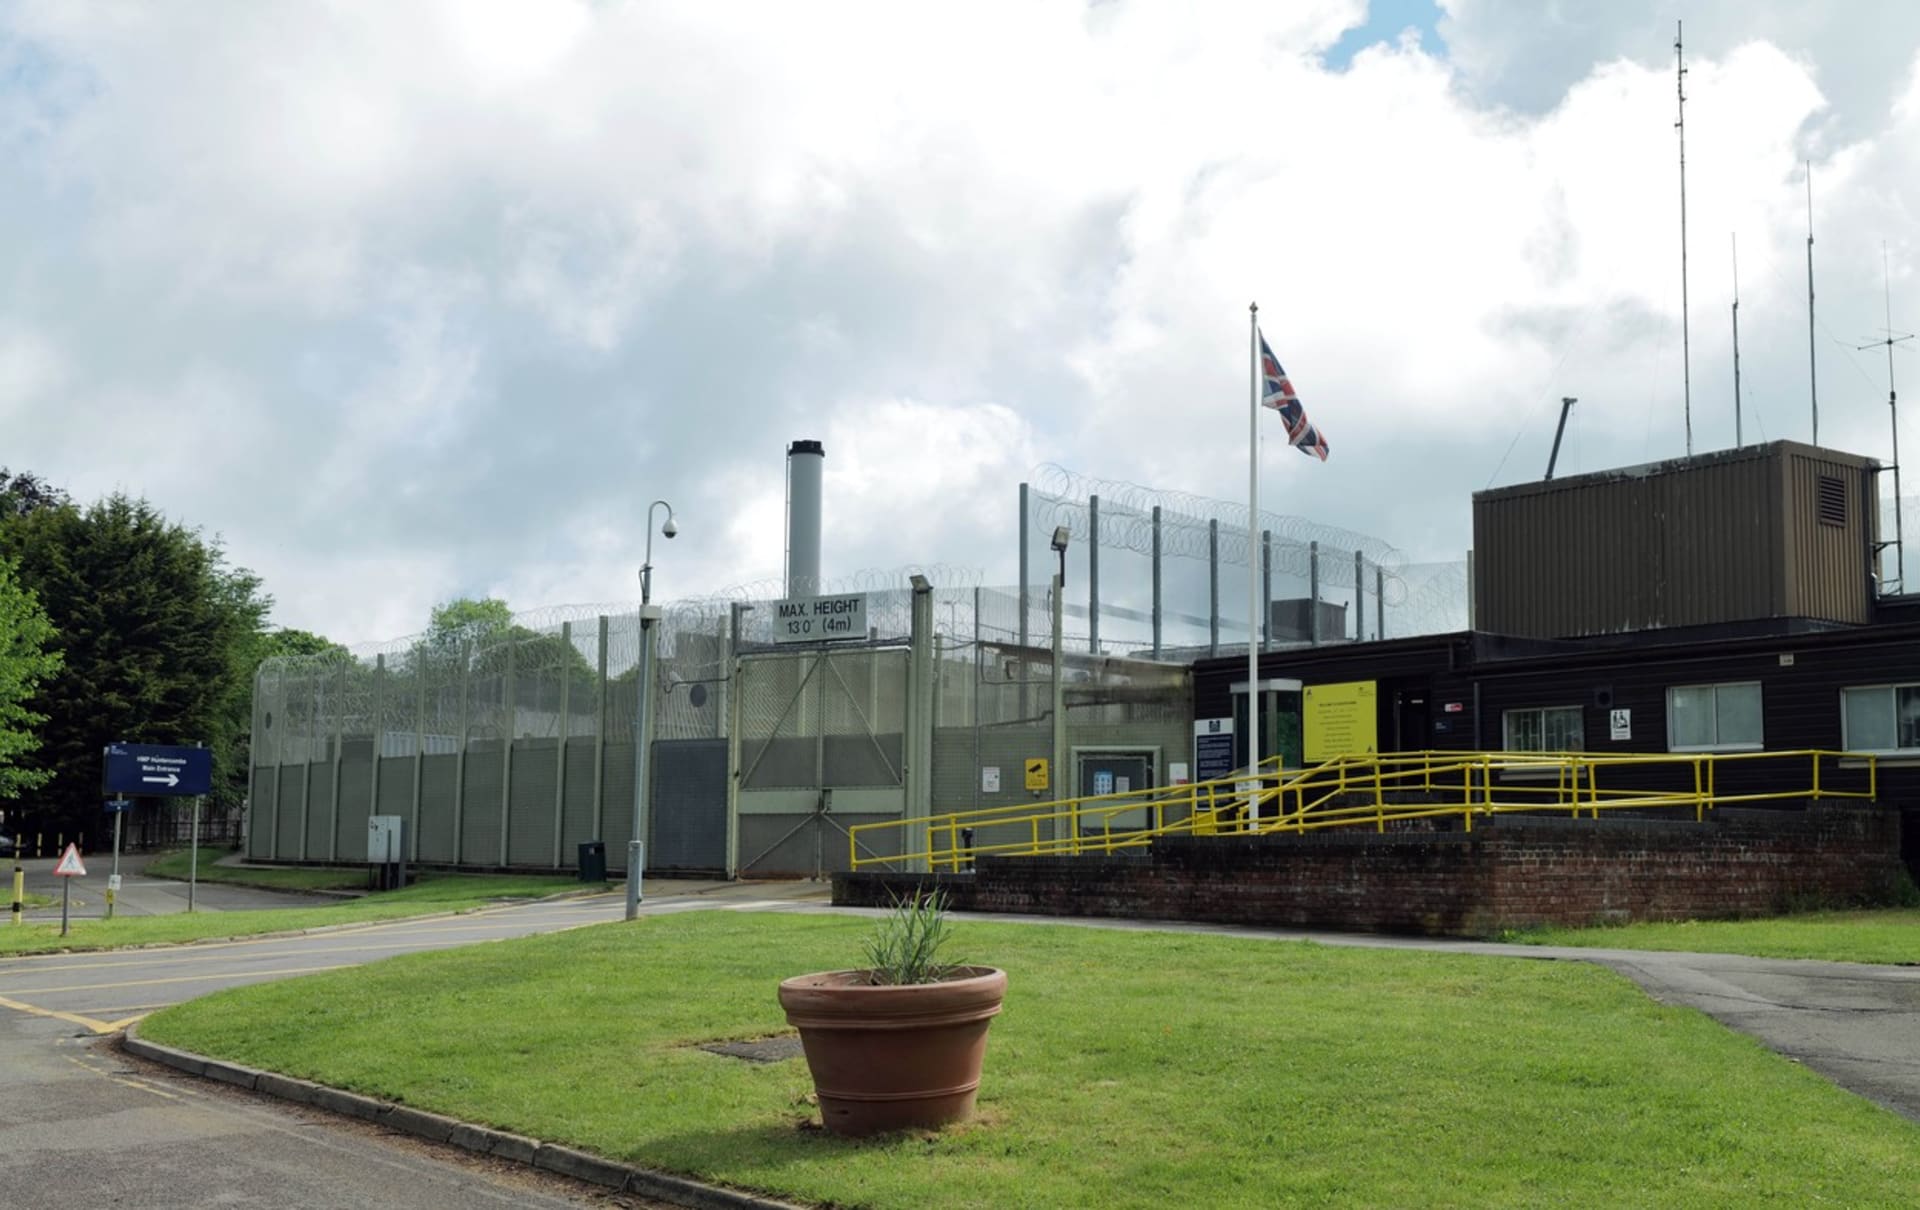 Pohled na věznici Huntercombe v Nuffieldu, který leží 70 kilometrů od Londýna, kde si nově odpykává bývalý německý tenista Boris Becker trest 2,5 roku za machinace během insolvenčního řízení. 